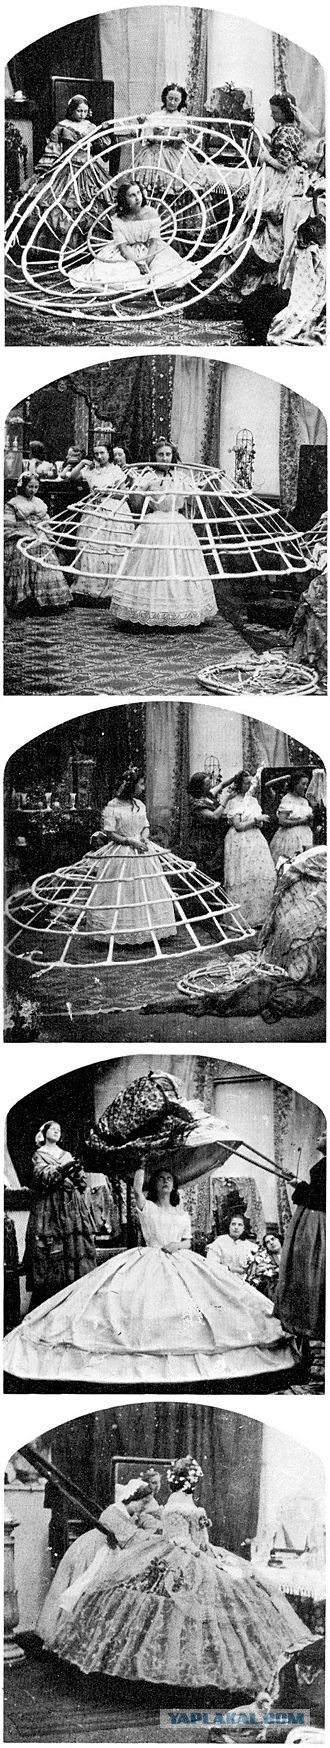 Как женщины в 19 веке умудрялись посещать дамские комнаты в своих огромных кринолинах.